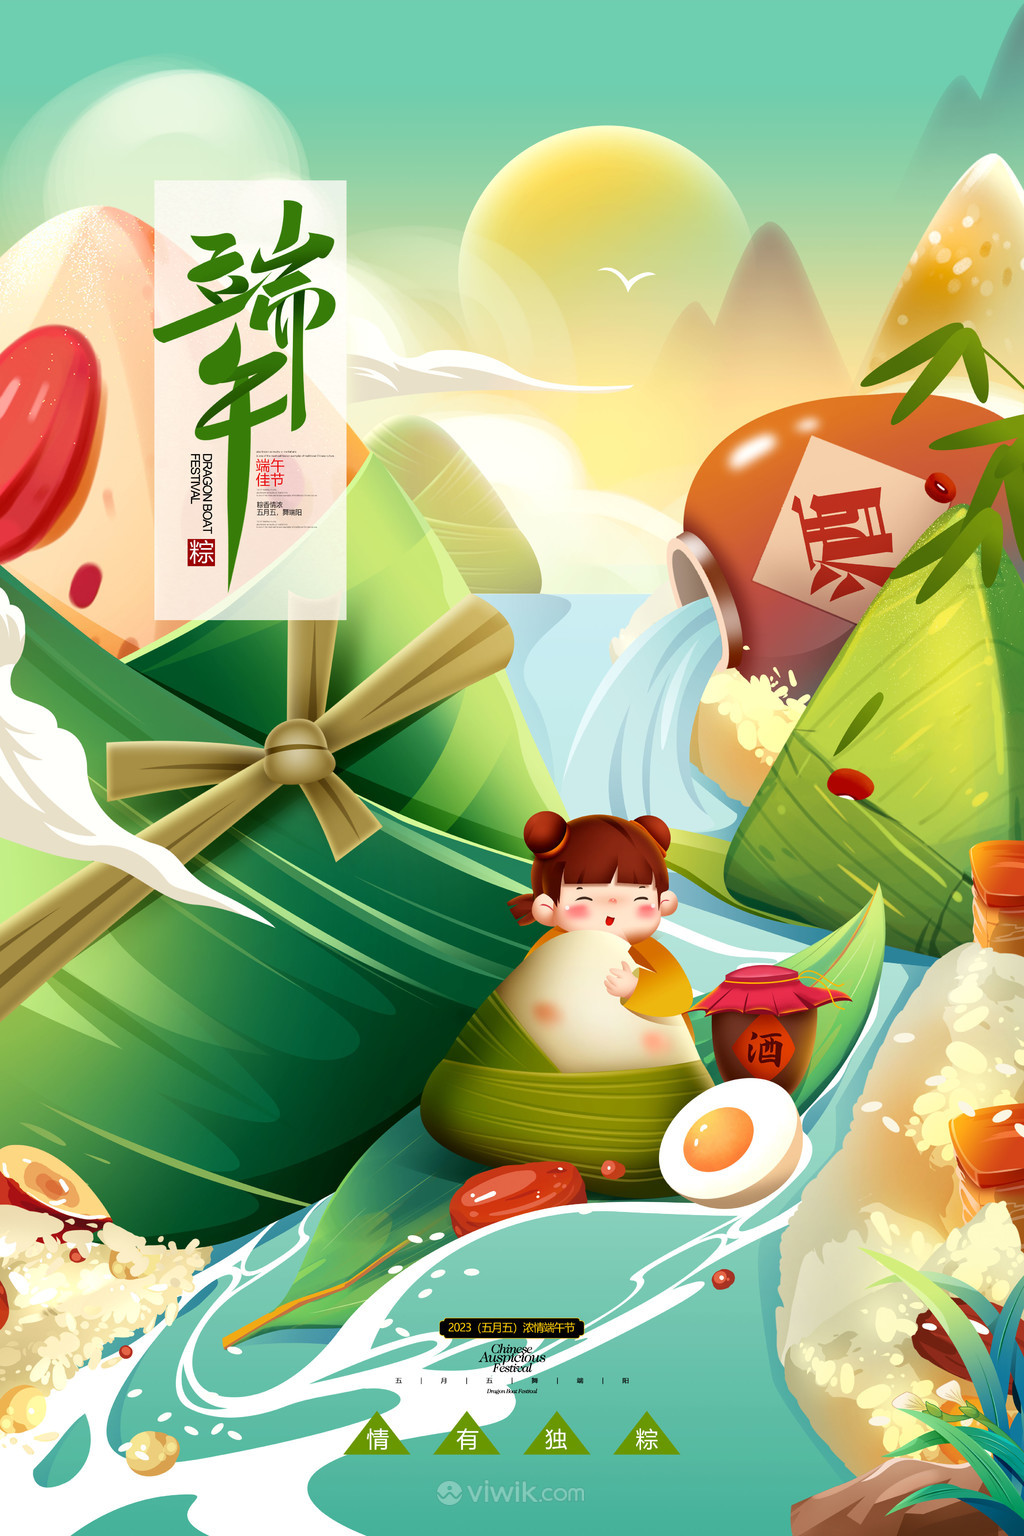 赛龙舟包粽子端午节促销海报插画素材